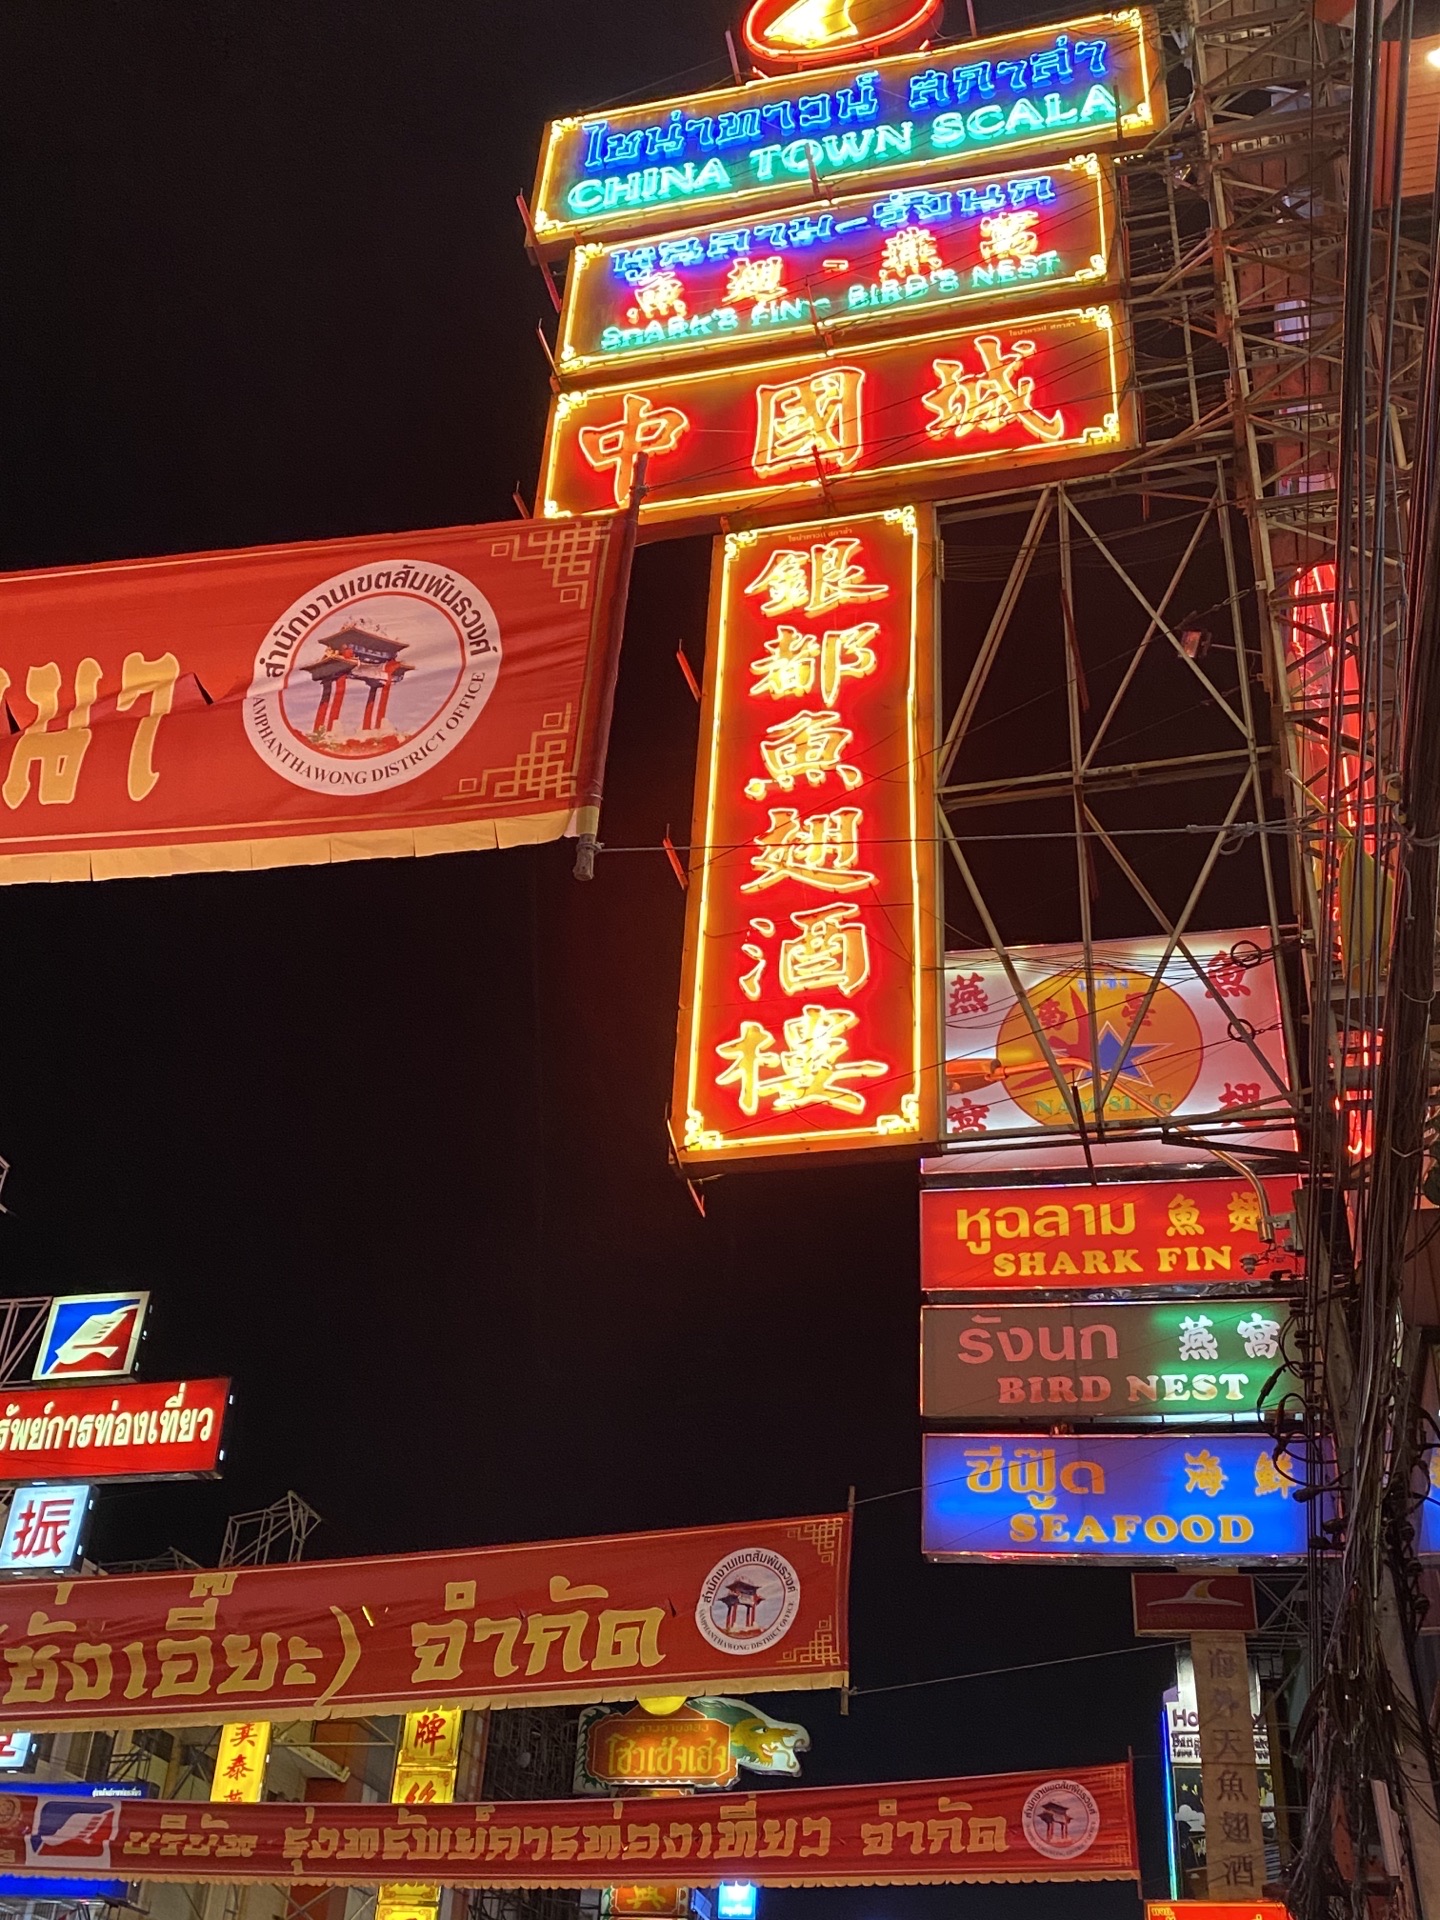 2019唐人街_旅游攻略_门票_地址_游记点评,曼谷旅游景点推荐 - 去哪儿攻略社区